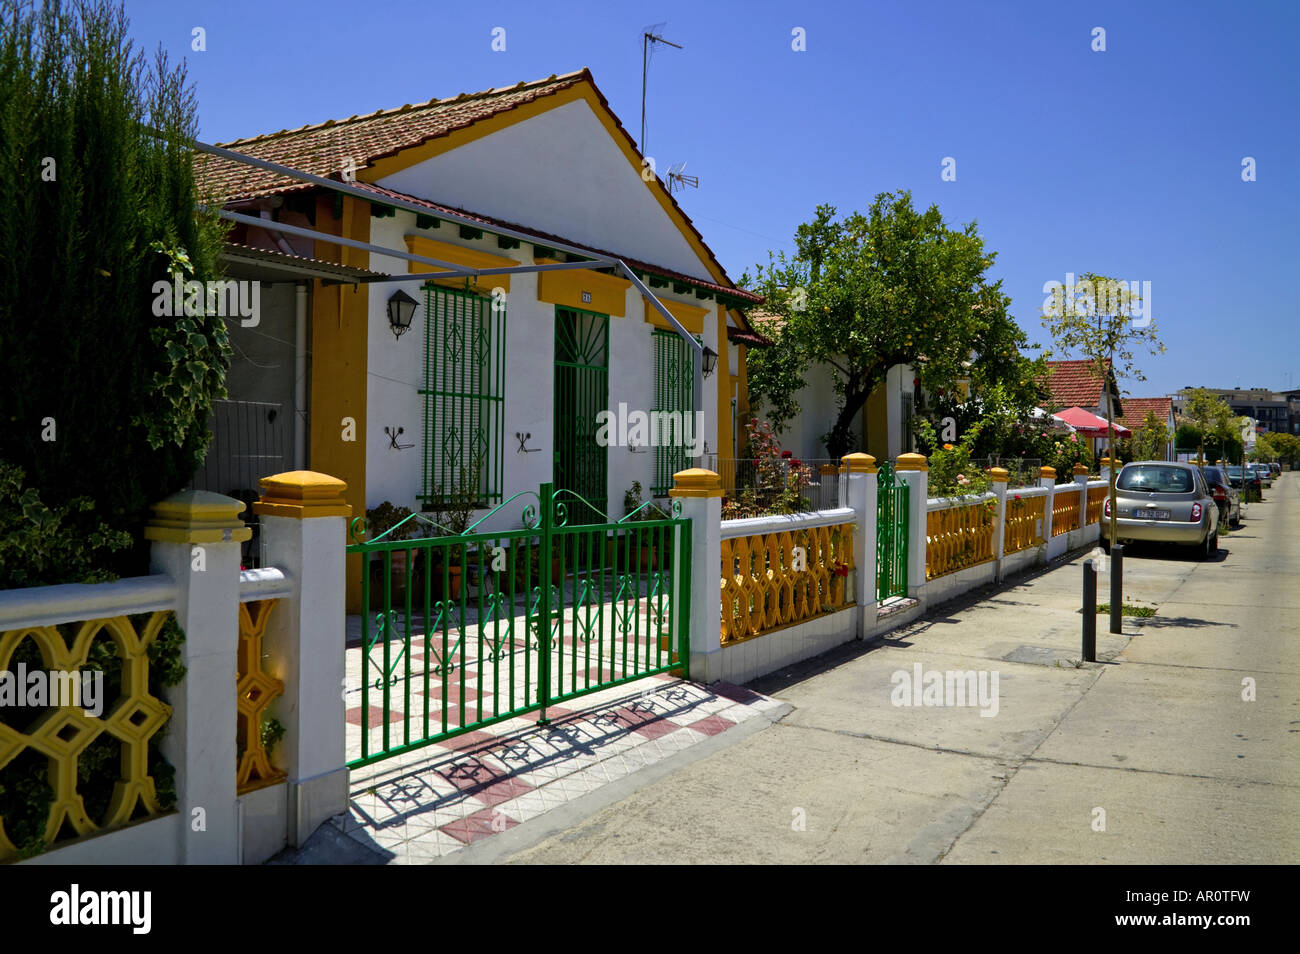 Le Barrio de Reina Victoria, Huelva, Espagne Banque D'Images